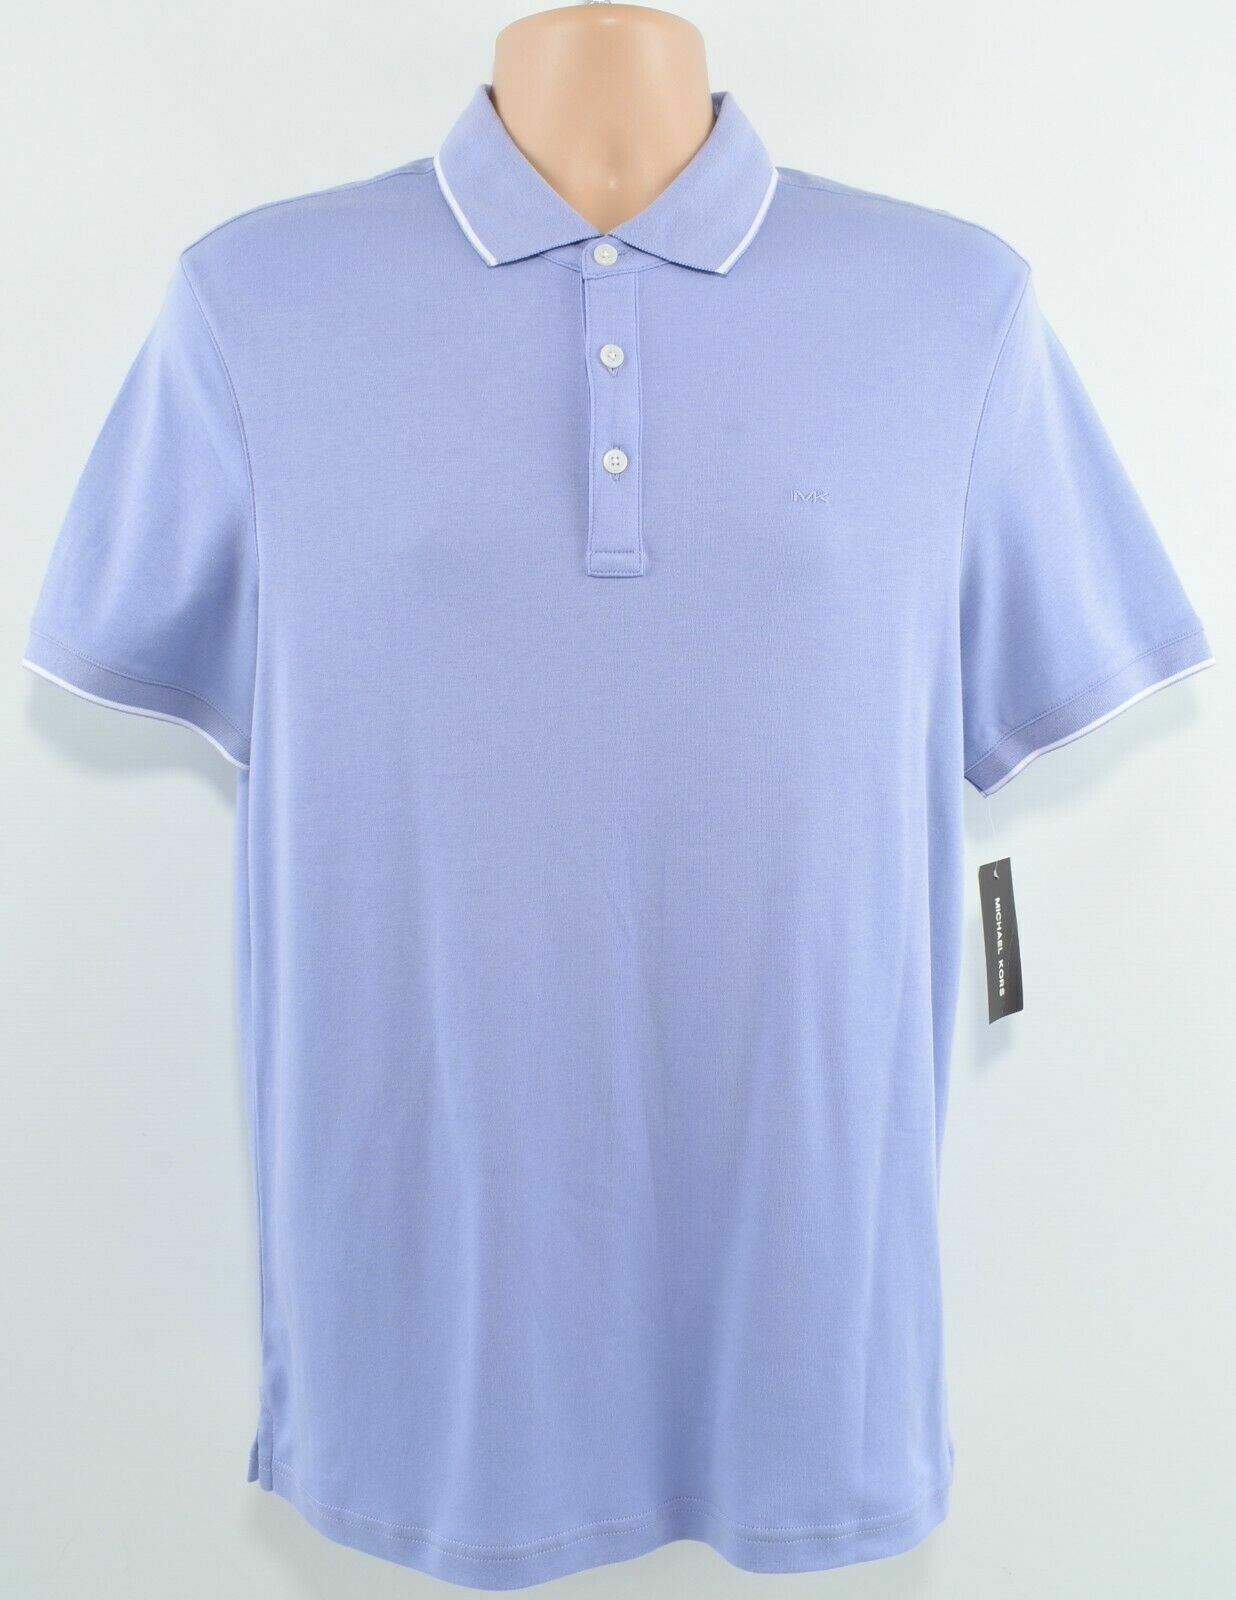 MICHAEL KORS Men's Cotton Jersey Polo Shirt, Thistle Purple, size S